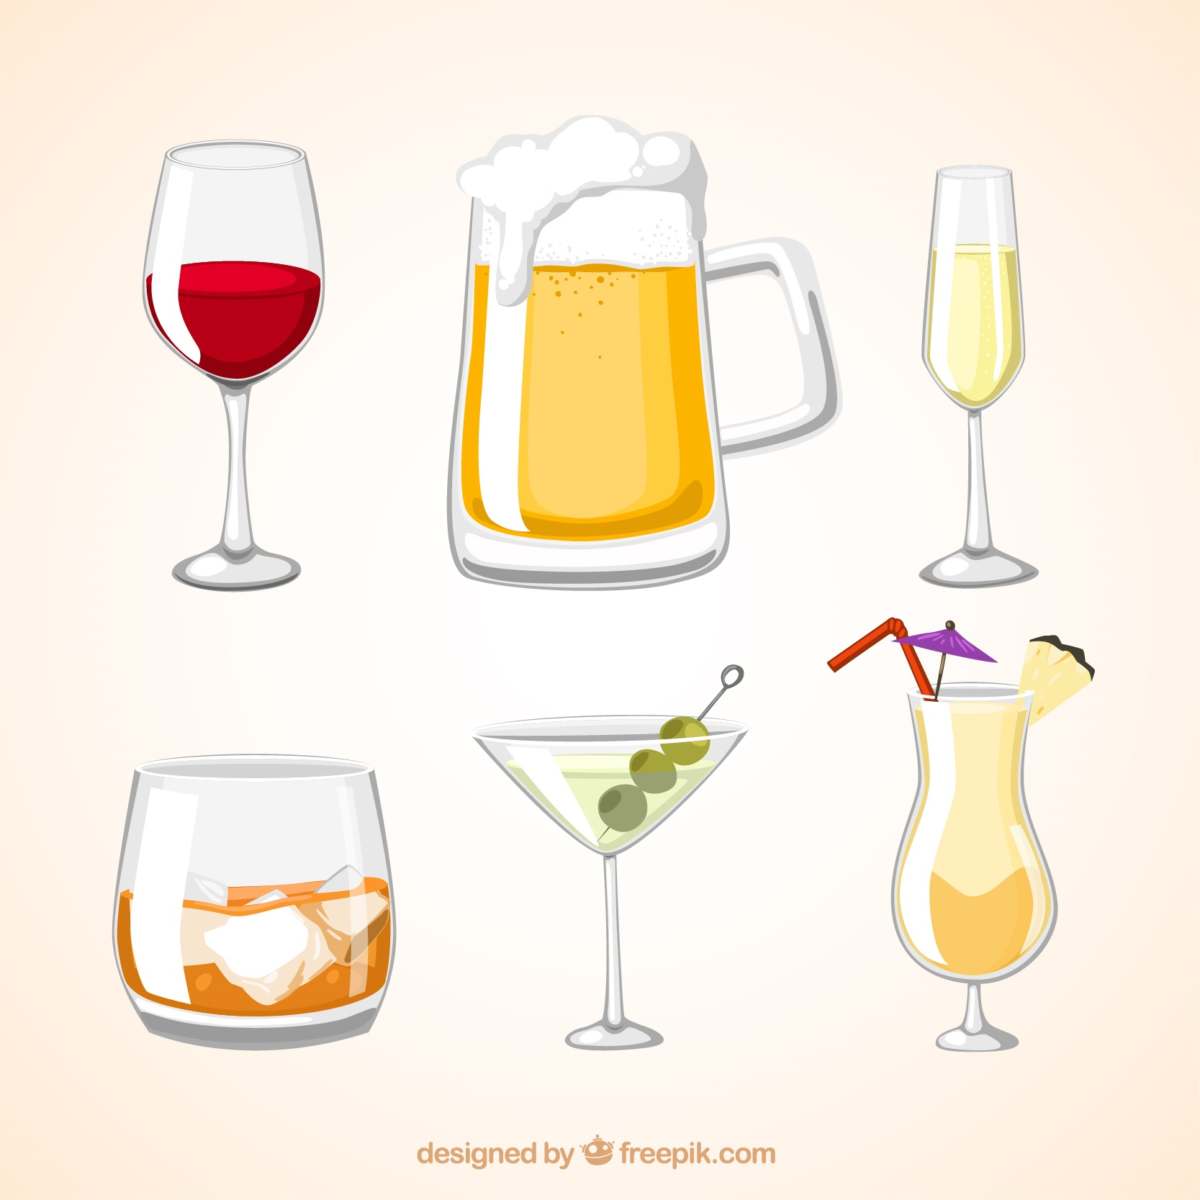 imagem de diferentes tipos de bebida alcoólica relacionando com álcool e câncer